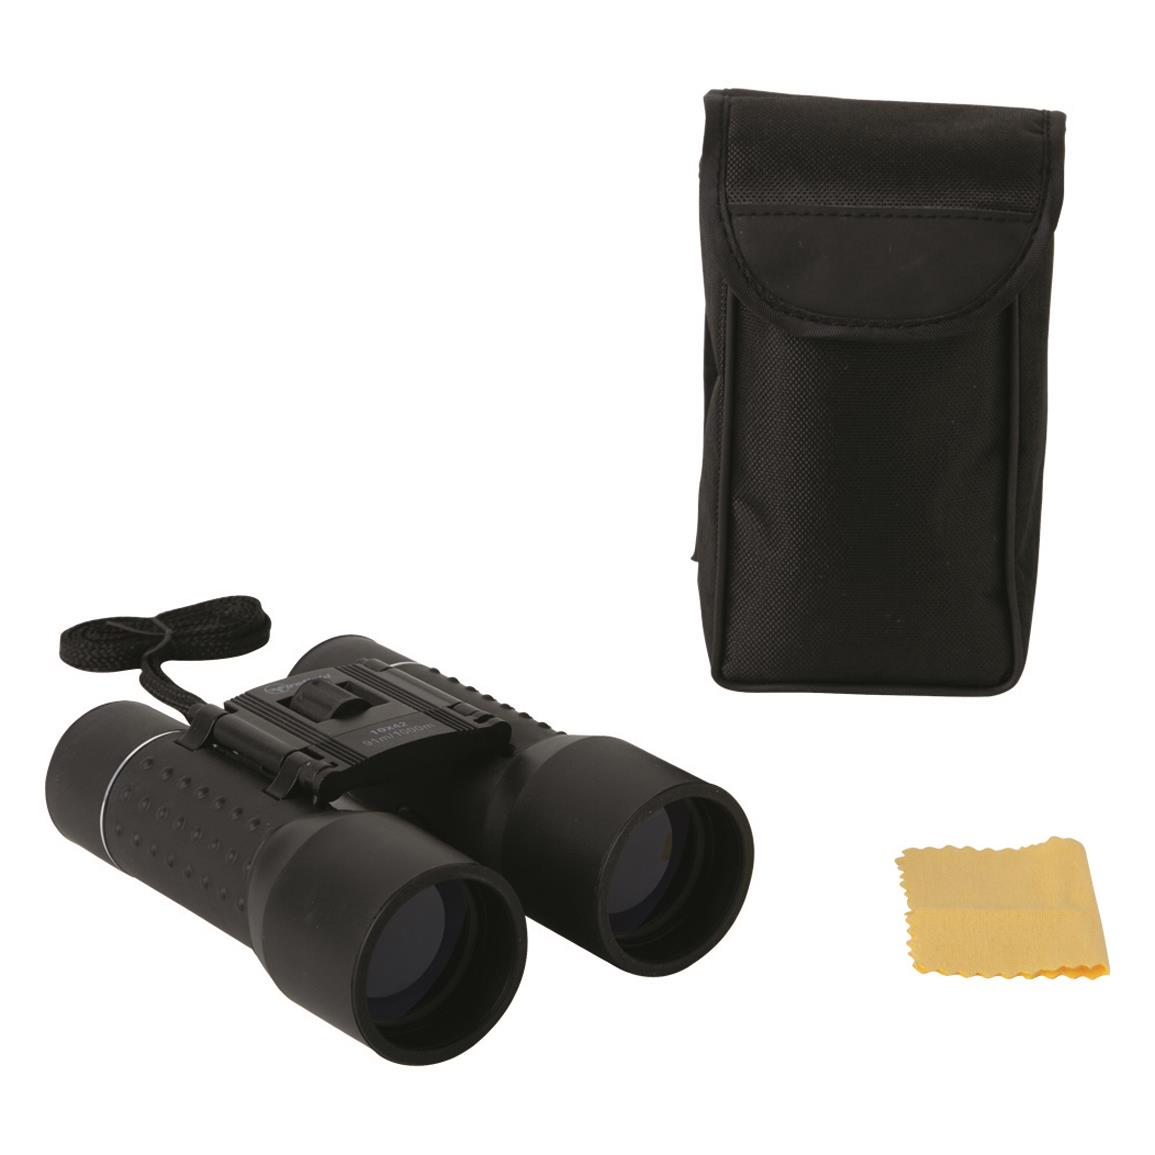 Firefield LM 10x42mm Binoculars